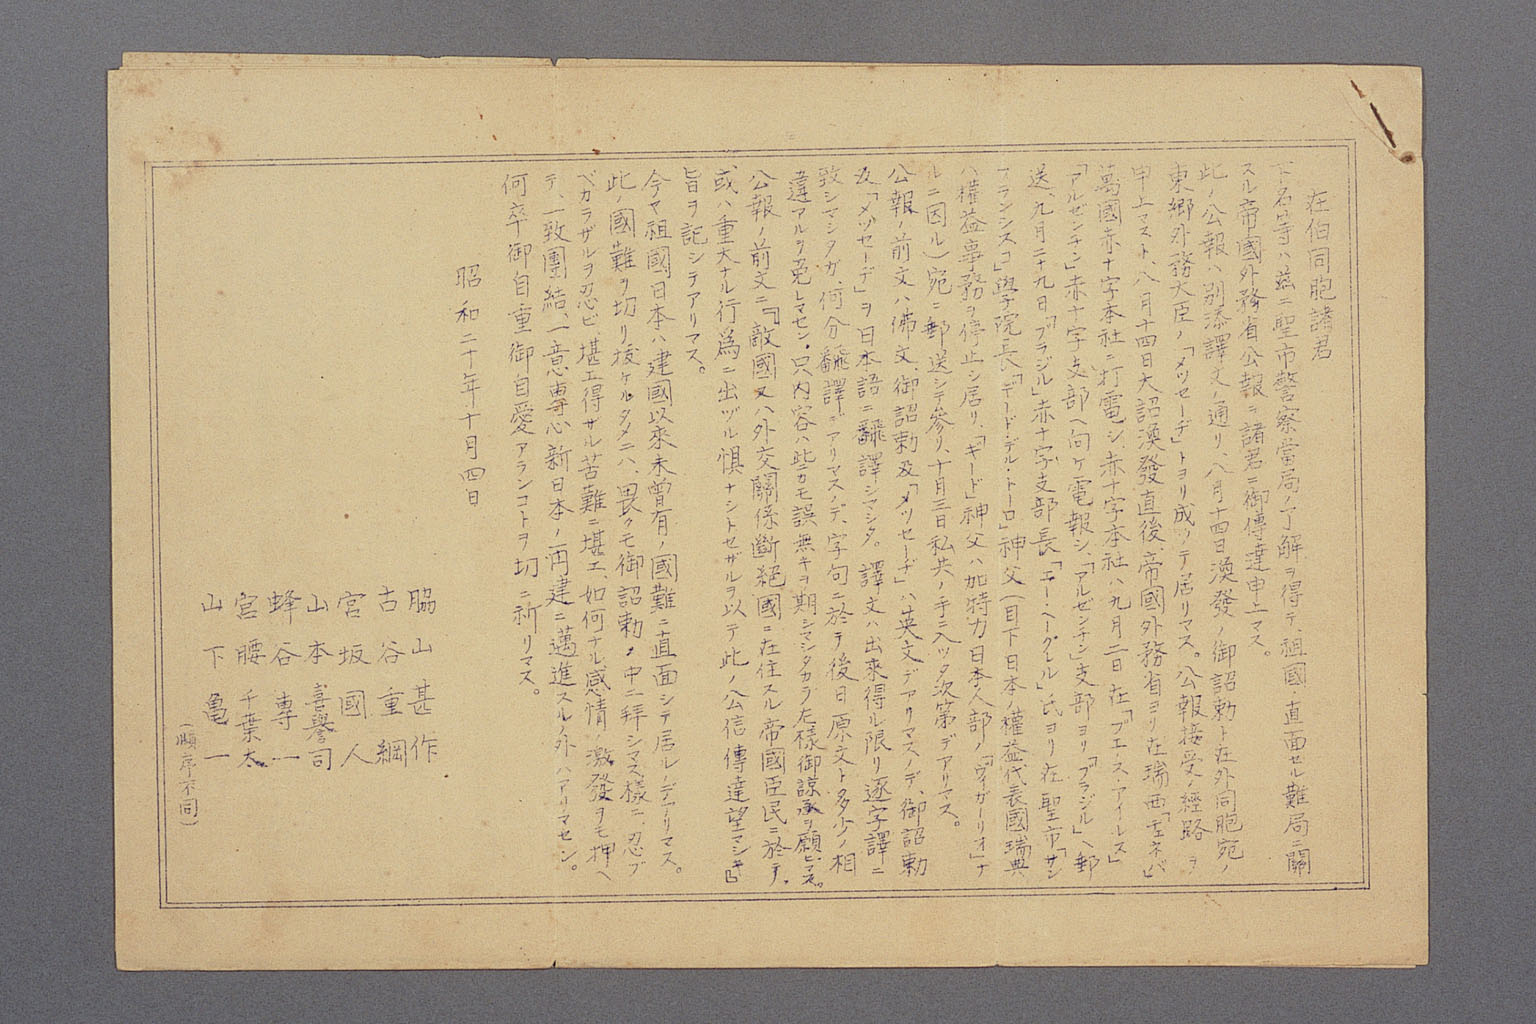 画像『認識派から伝達された終戦詔書と東郷外務大臣のメッセージ（1945年10月4日）』